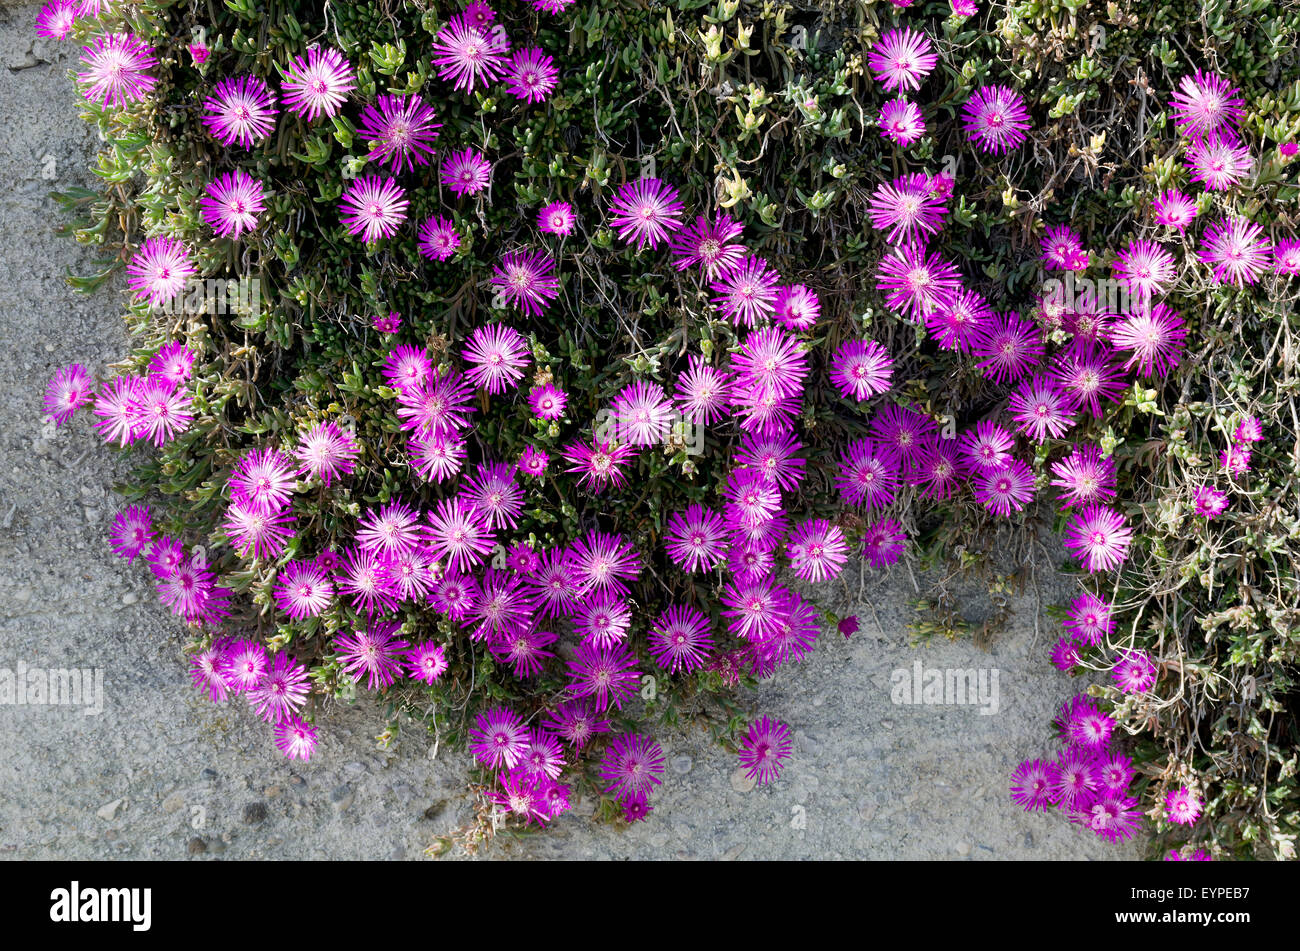 Mesembryanthemum flowers. Stock Photo